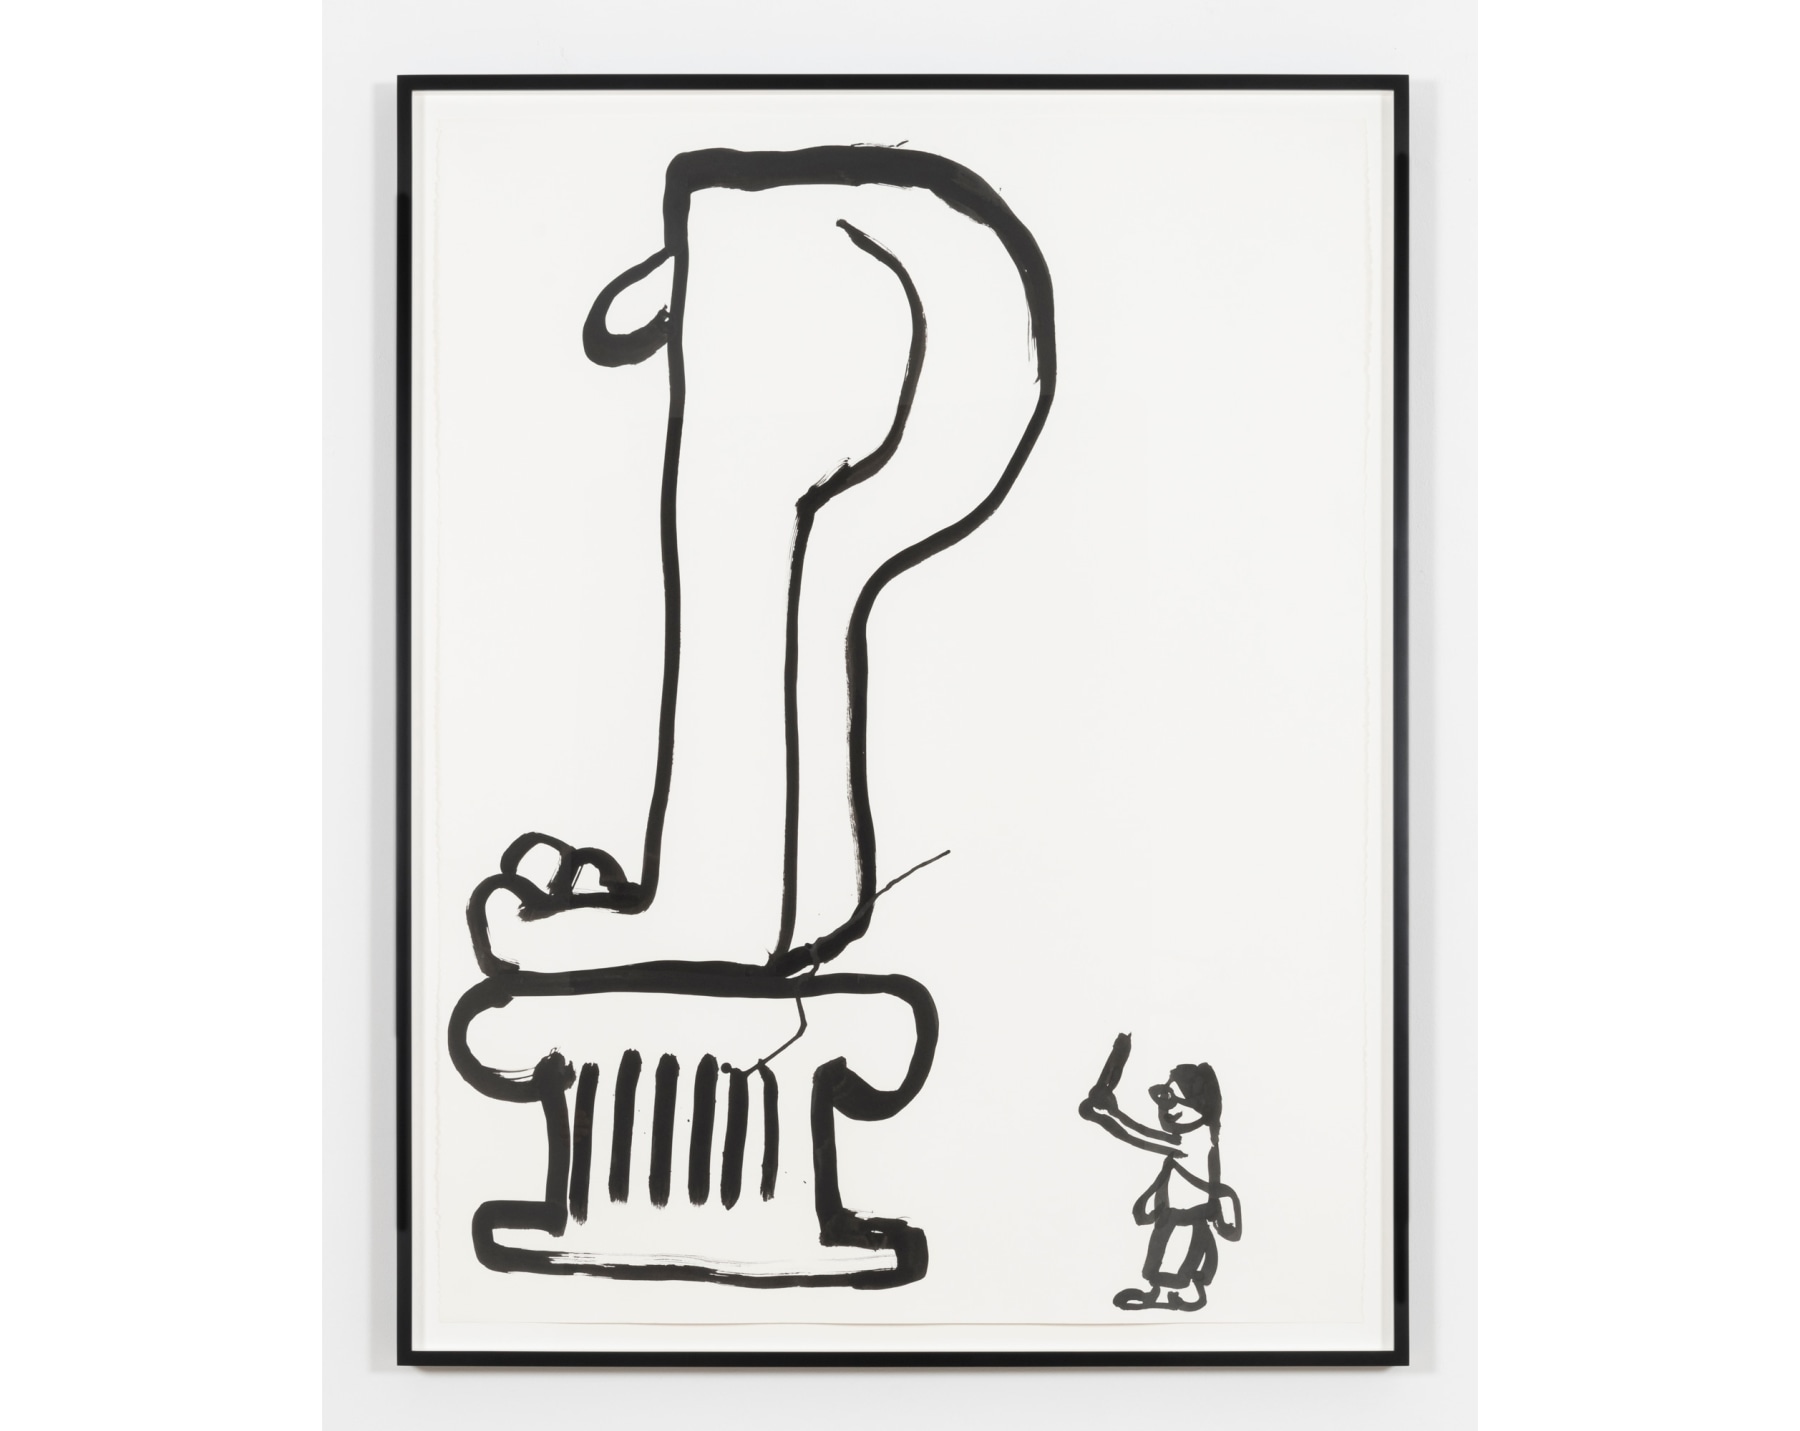 Paul Chan - Drawings for Word Book by Ludwig Wittgenstein - Viewing Room - Greene Naftali Viewing Room